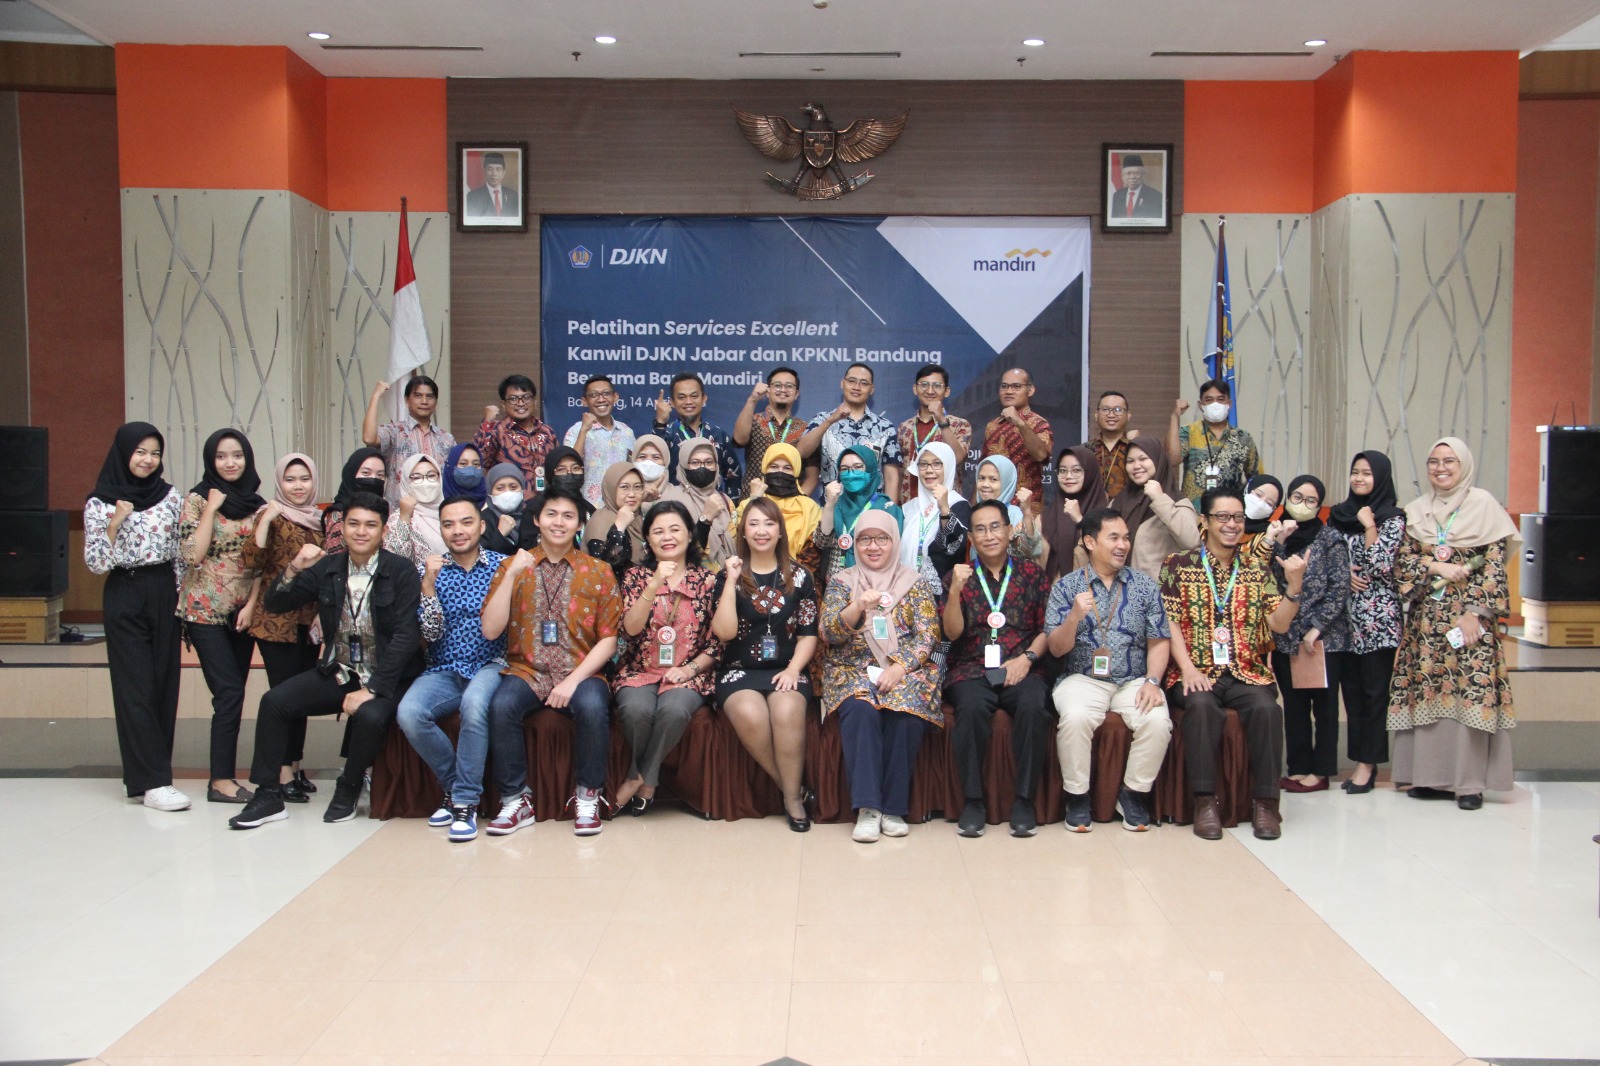 Pelatihan Service Excellence Kanwil DJKN Jabar dan KPKNL Bandung bekerjasama dengan Bank Mandiri